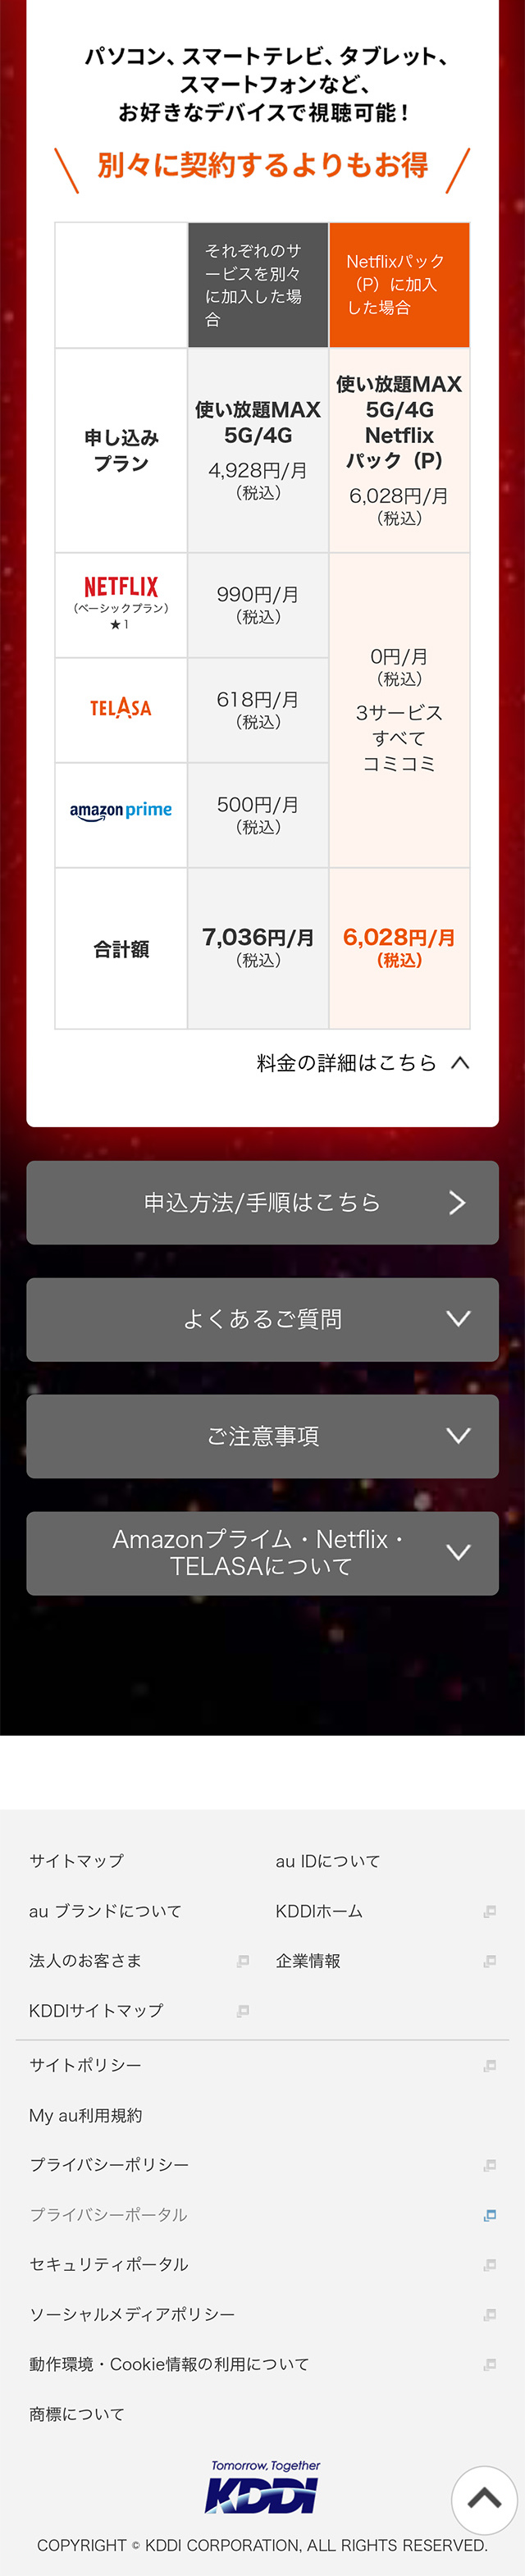 Netflix × au_sp_2